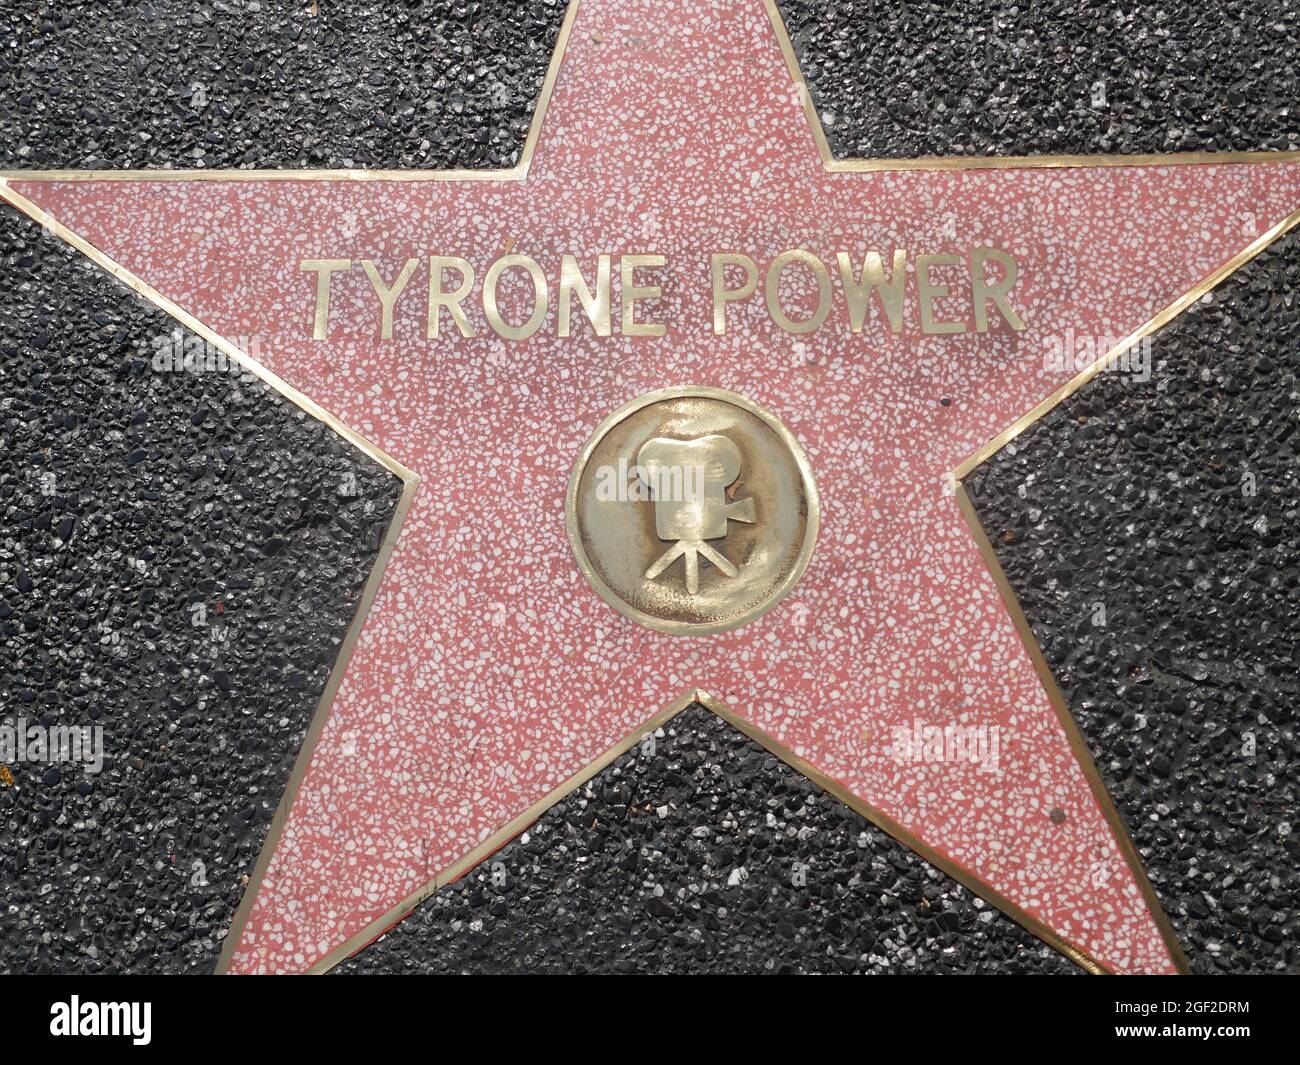 Hollywood, California, EE.UU. 17th de agosto de 2021 Una visión general de la atmósfera del actor Tyrone Power's New Star en el Paseo de la Fama de Hollywood el 17 de agosto de 2021 en Hollywood, California, EE.UU. Foto por Barry King/Alamy Foto de Stock Foto de stock